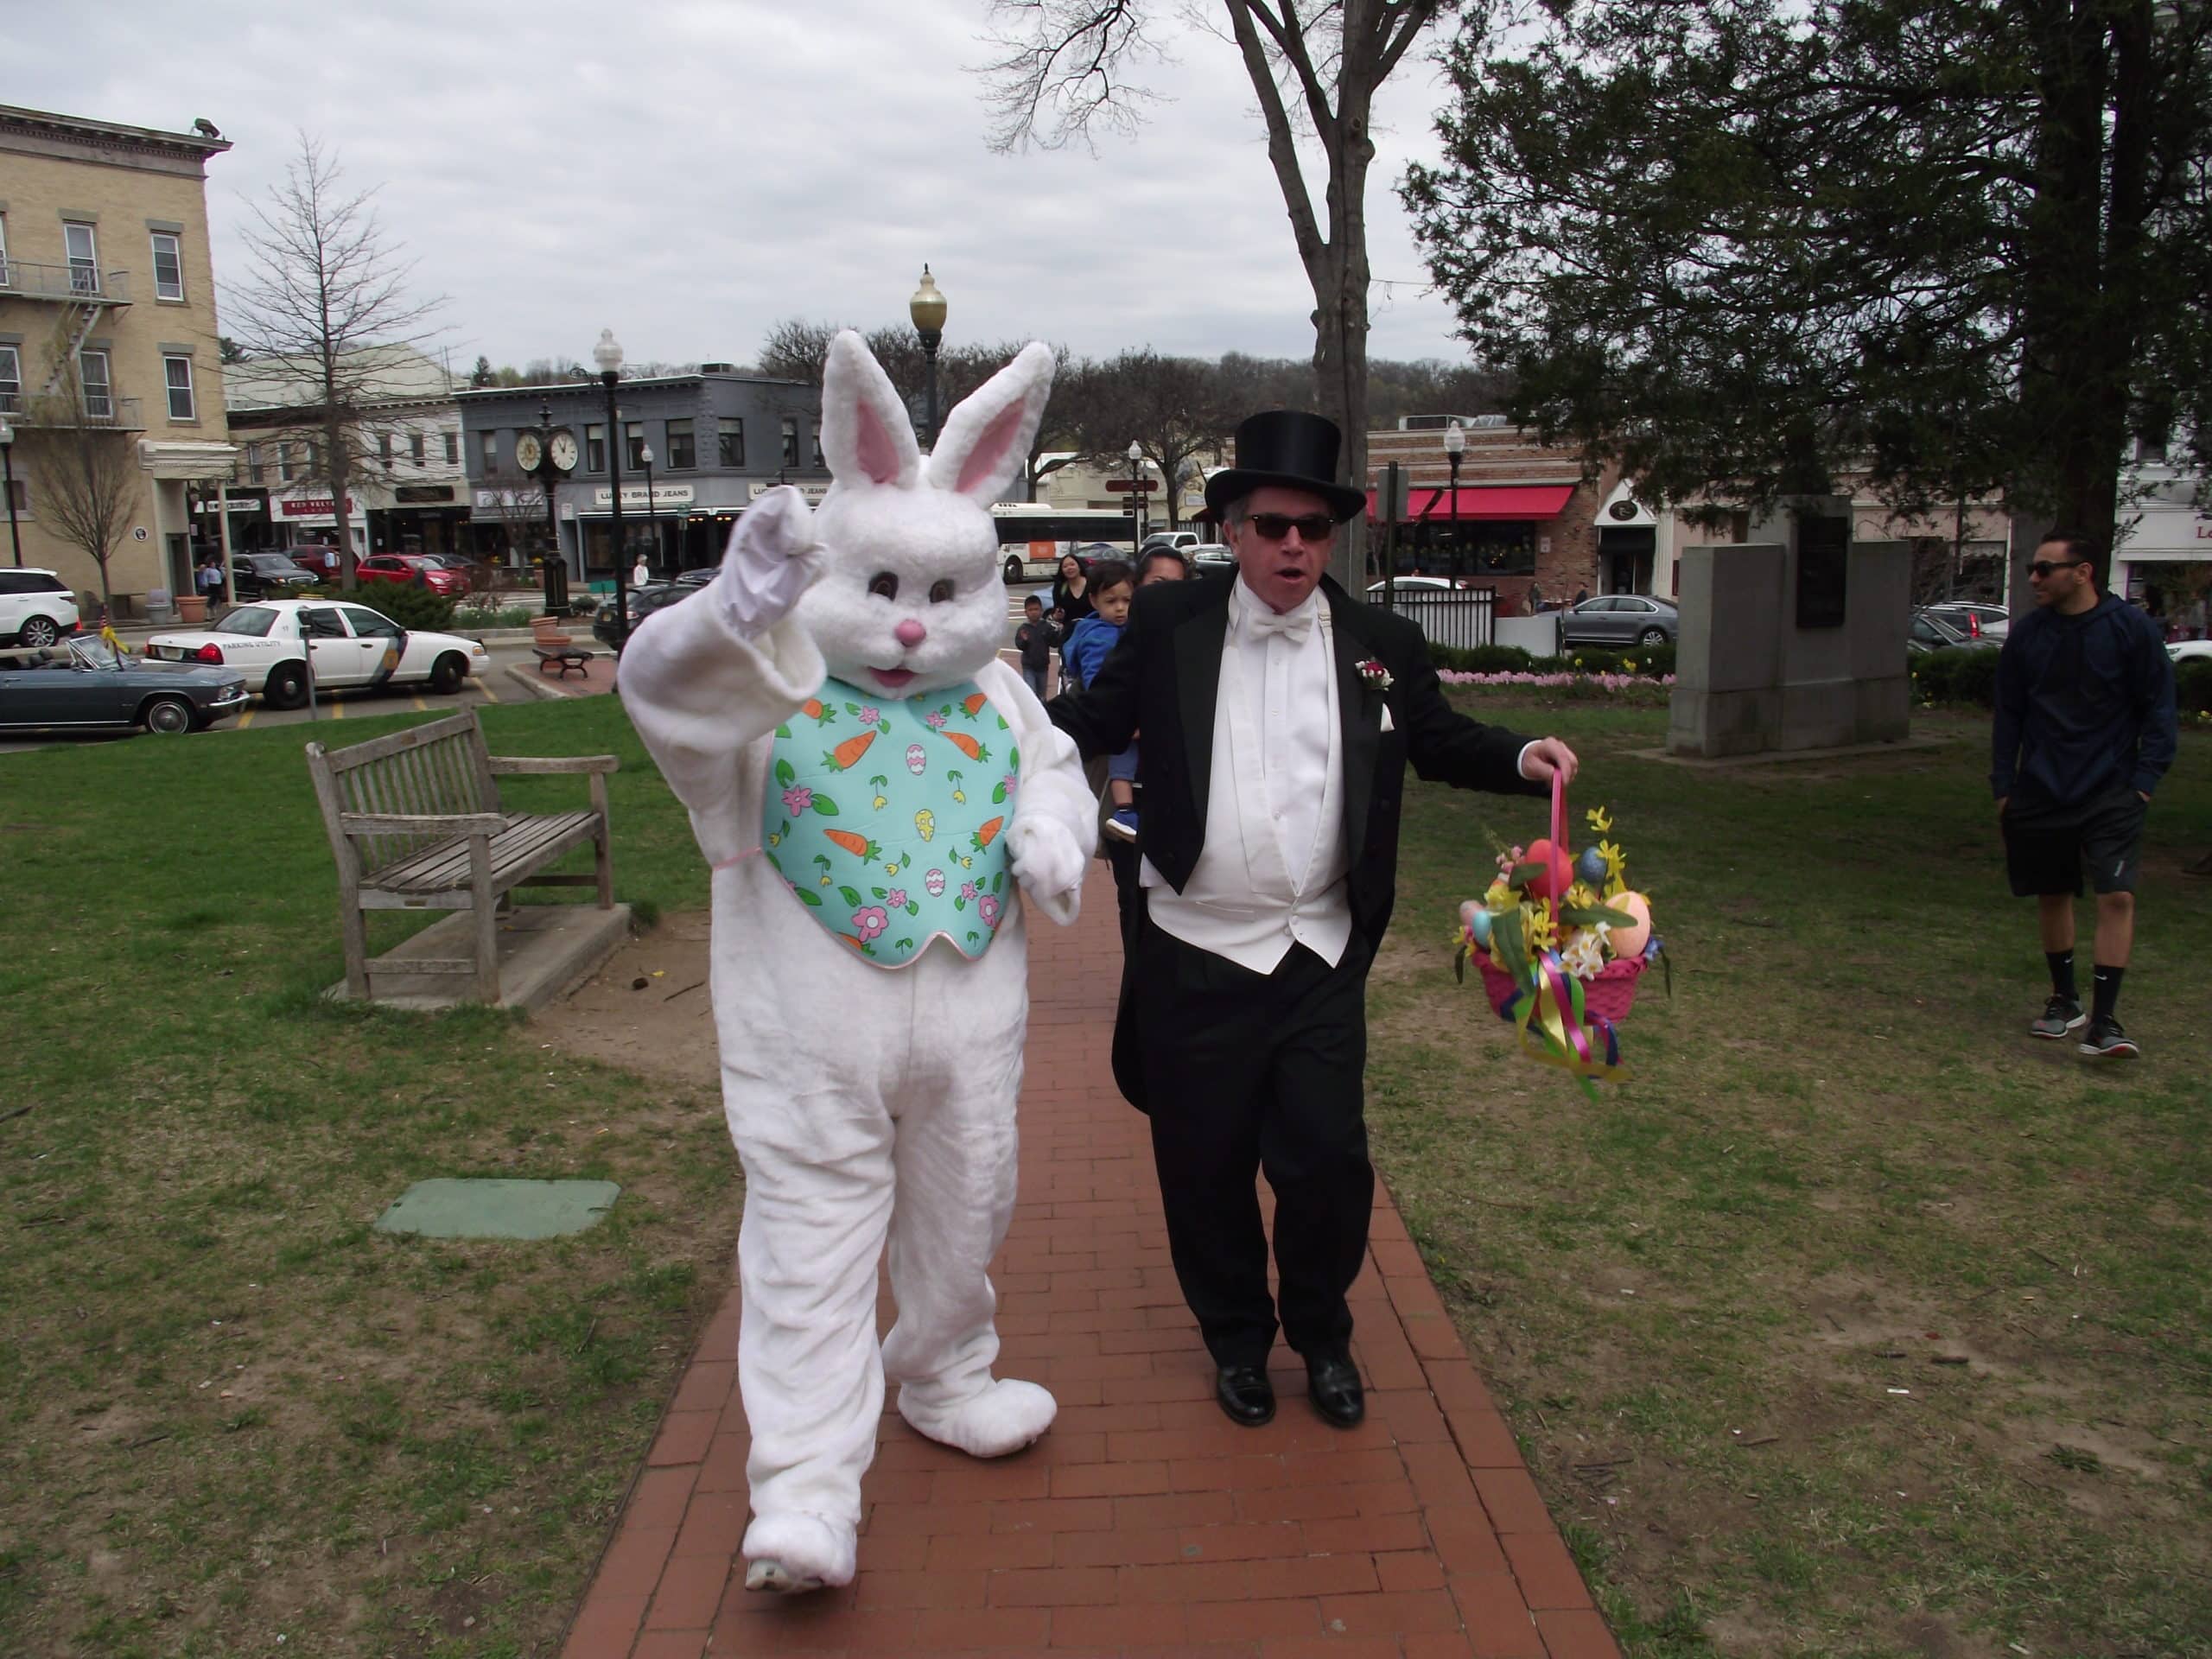 Easter in Ridgewood